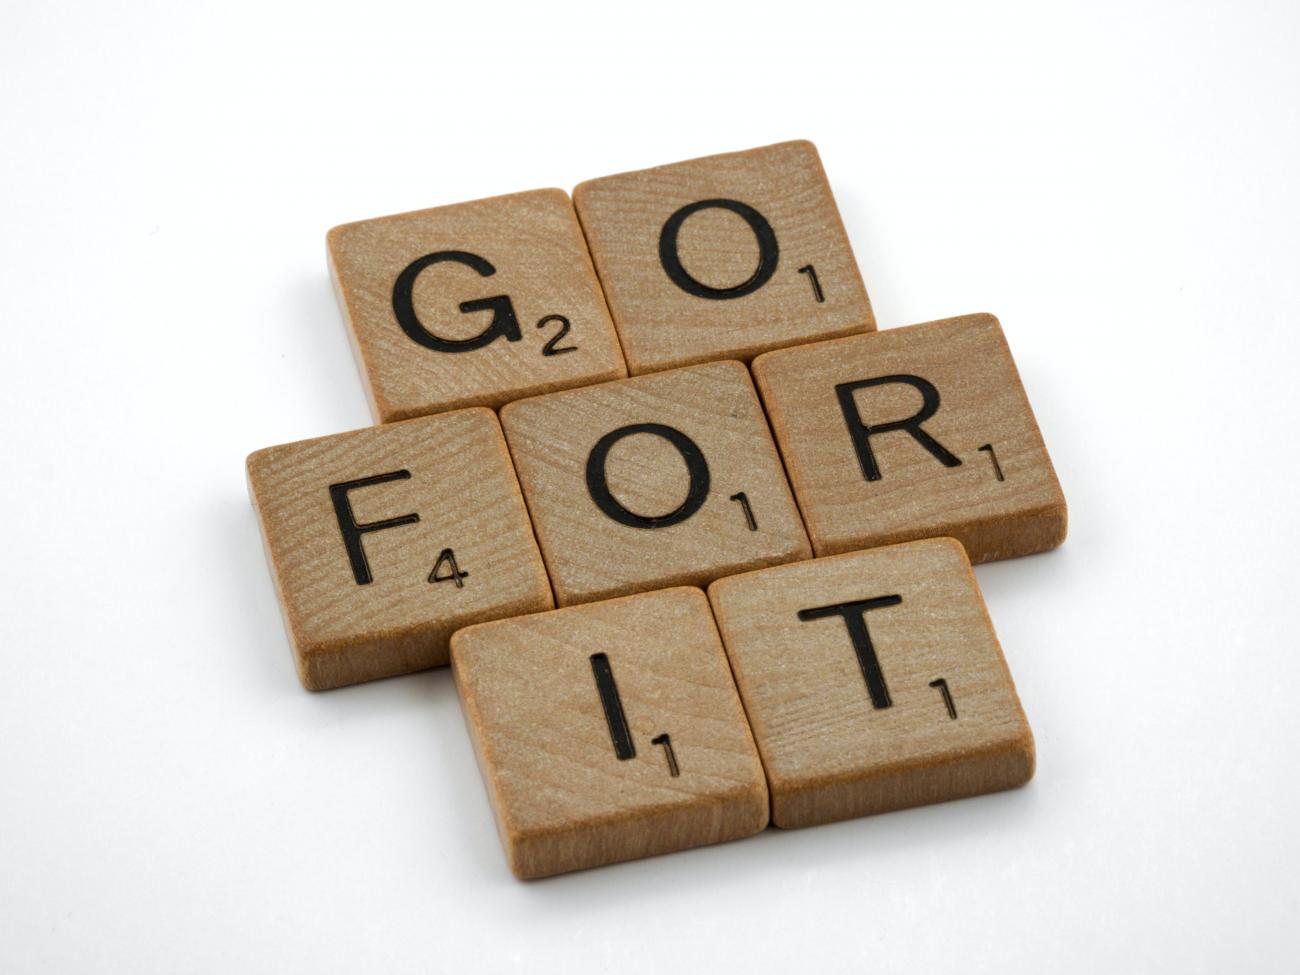 Scrabble tiles that spell out, "GO FOR IT" photo by Brett Jordan 